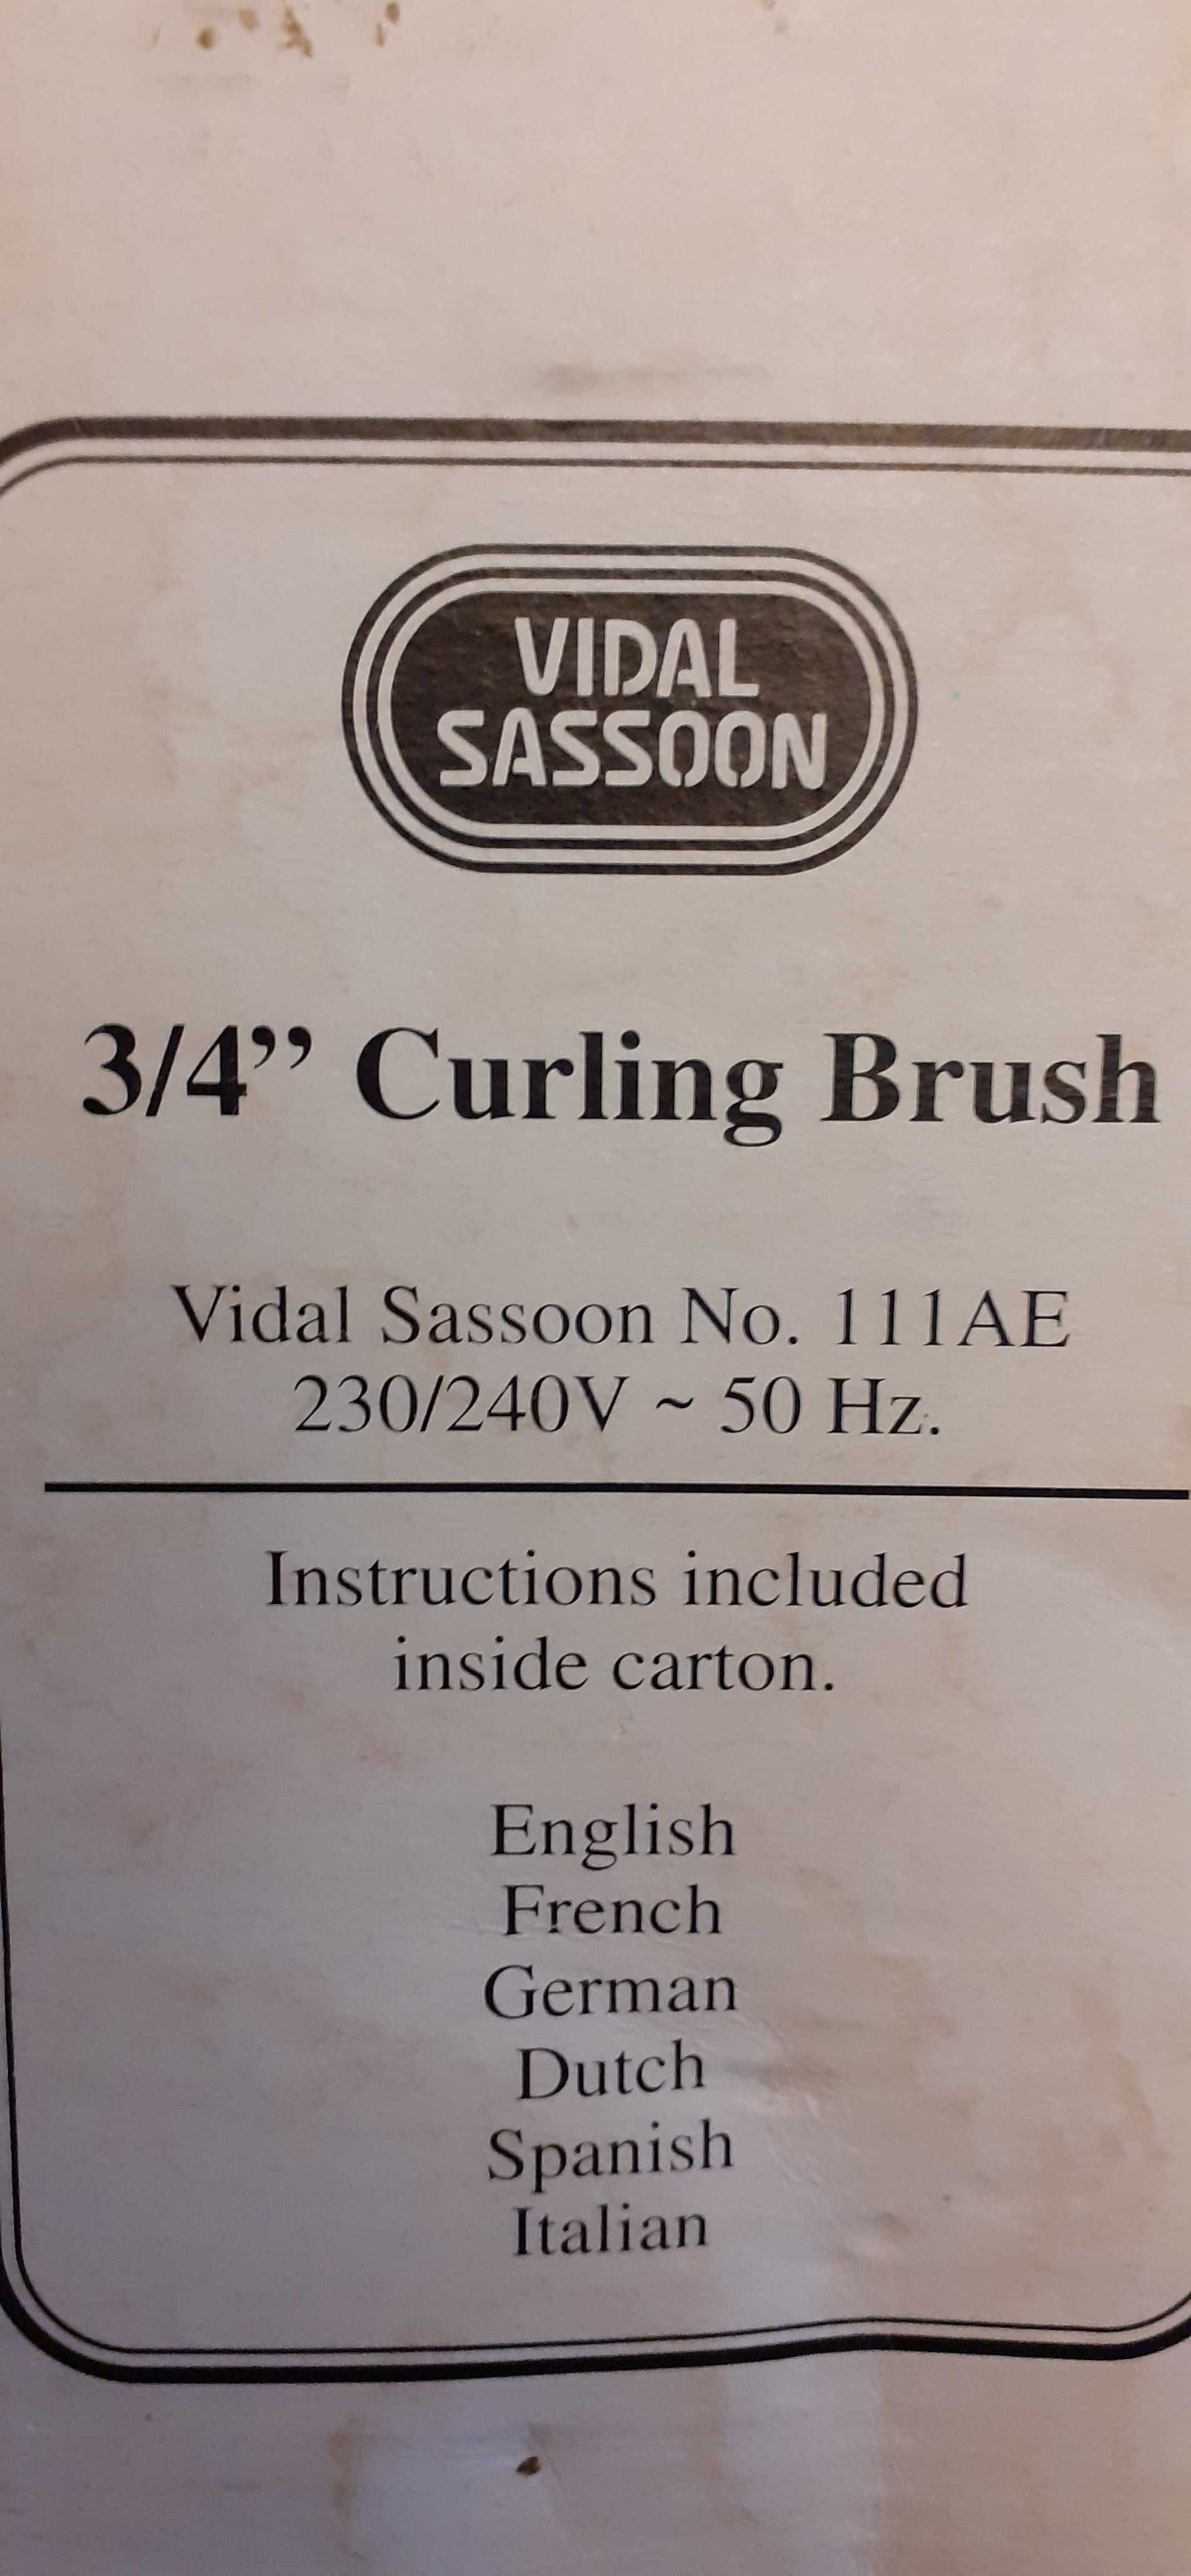 Vand Perie pentru ondulat parul Curling Brush 3/4"